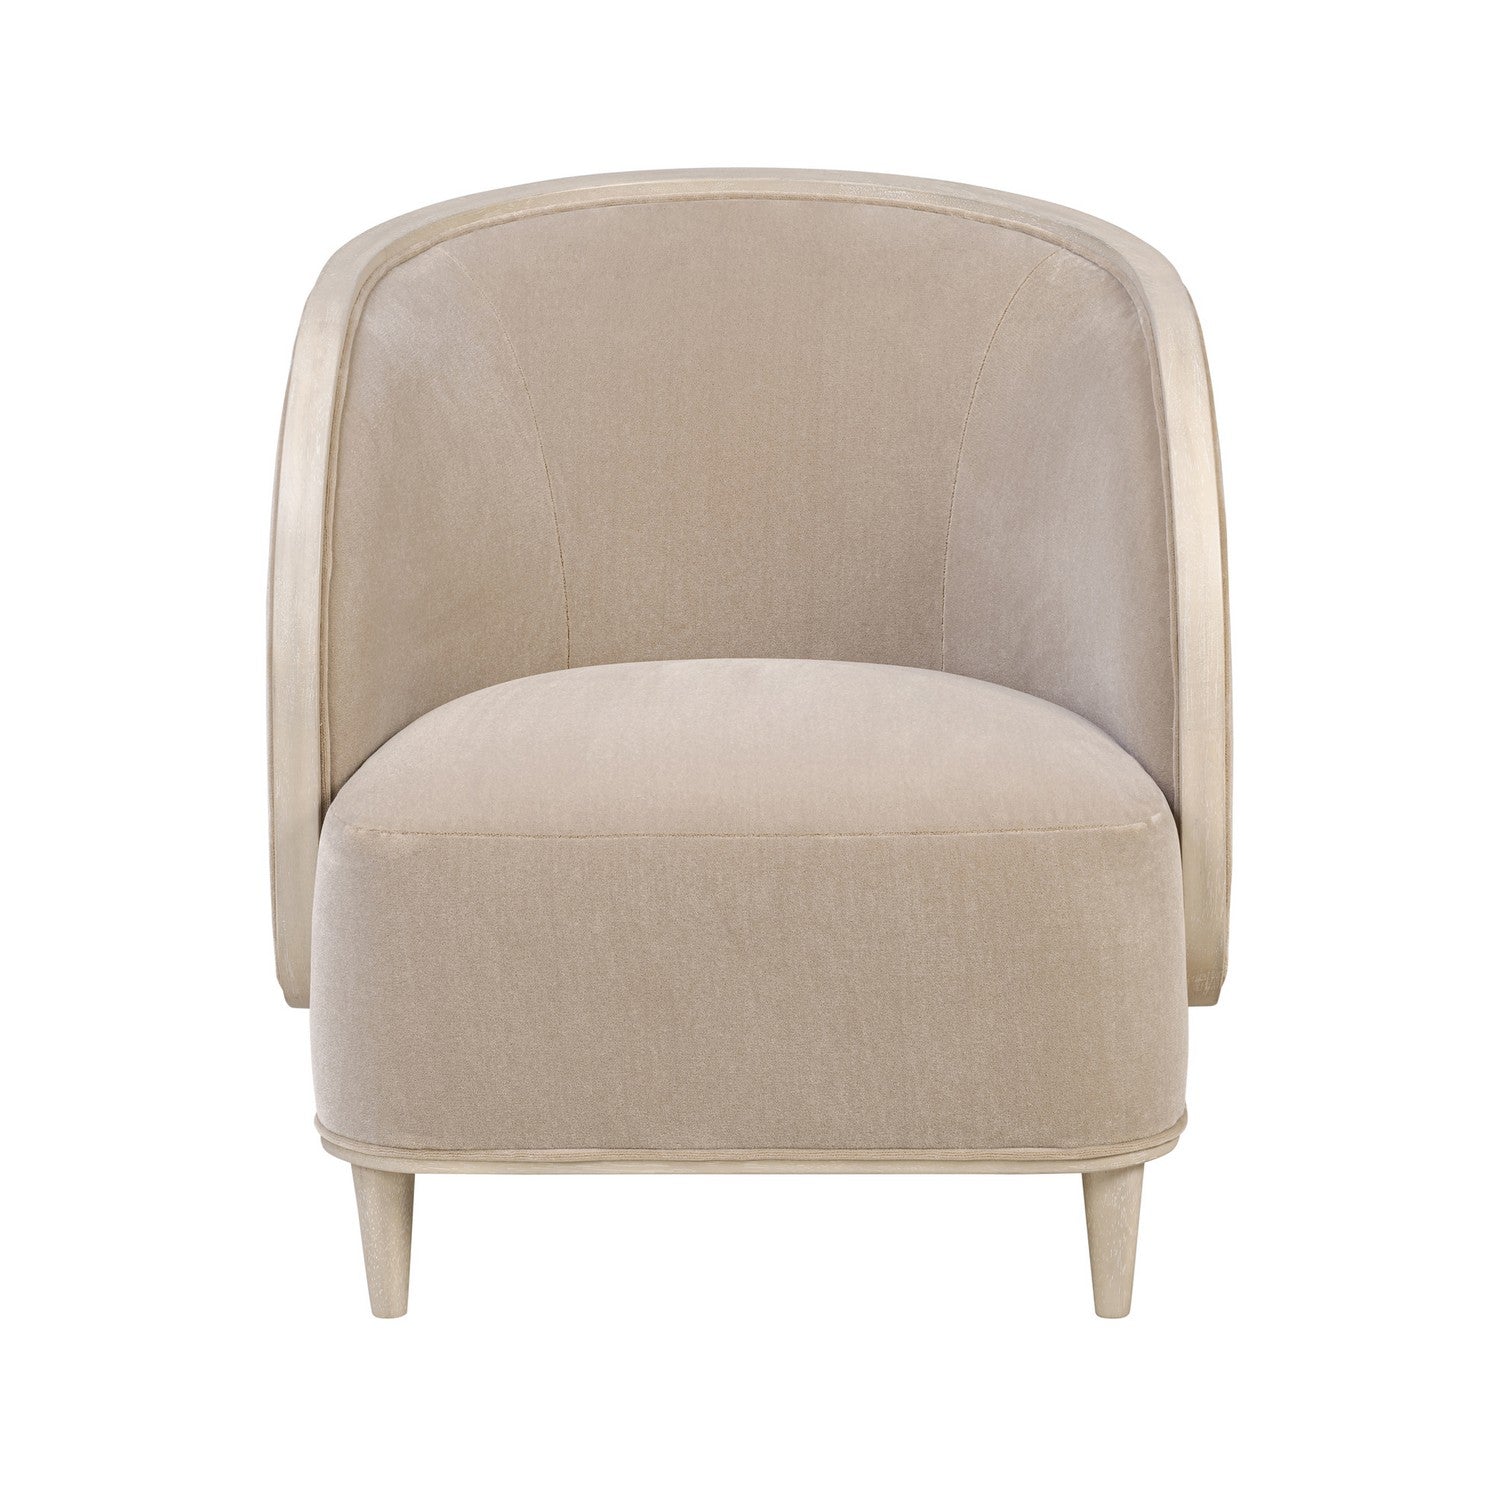 Varaluz - 510CH28A - Accent Chair - Hayworth - Ash Blond/Mushroom Mohair